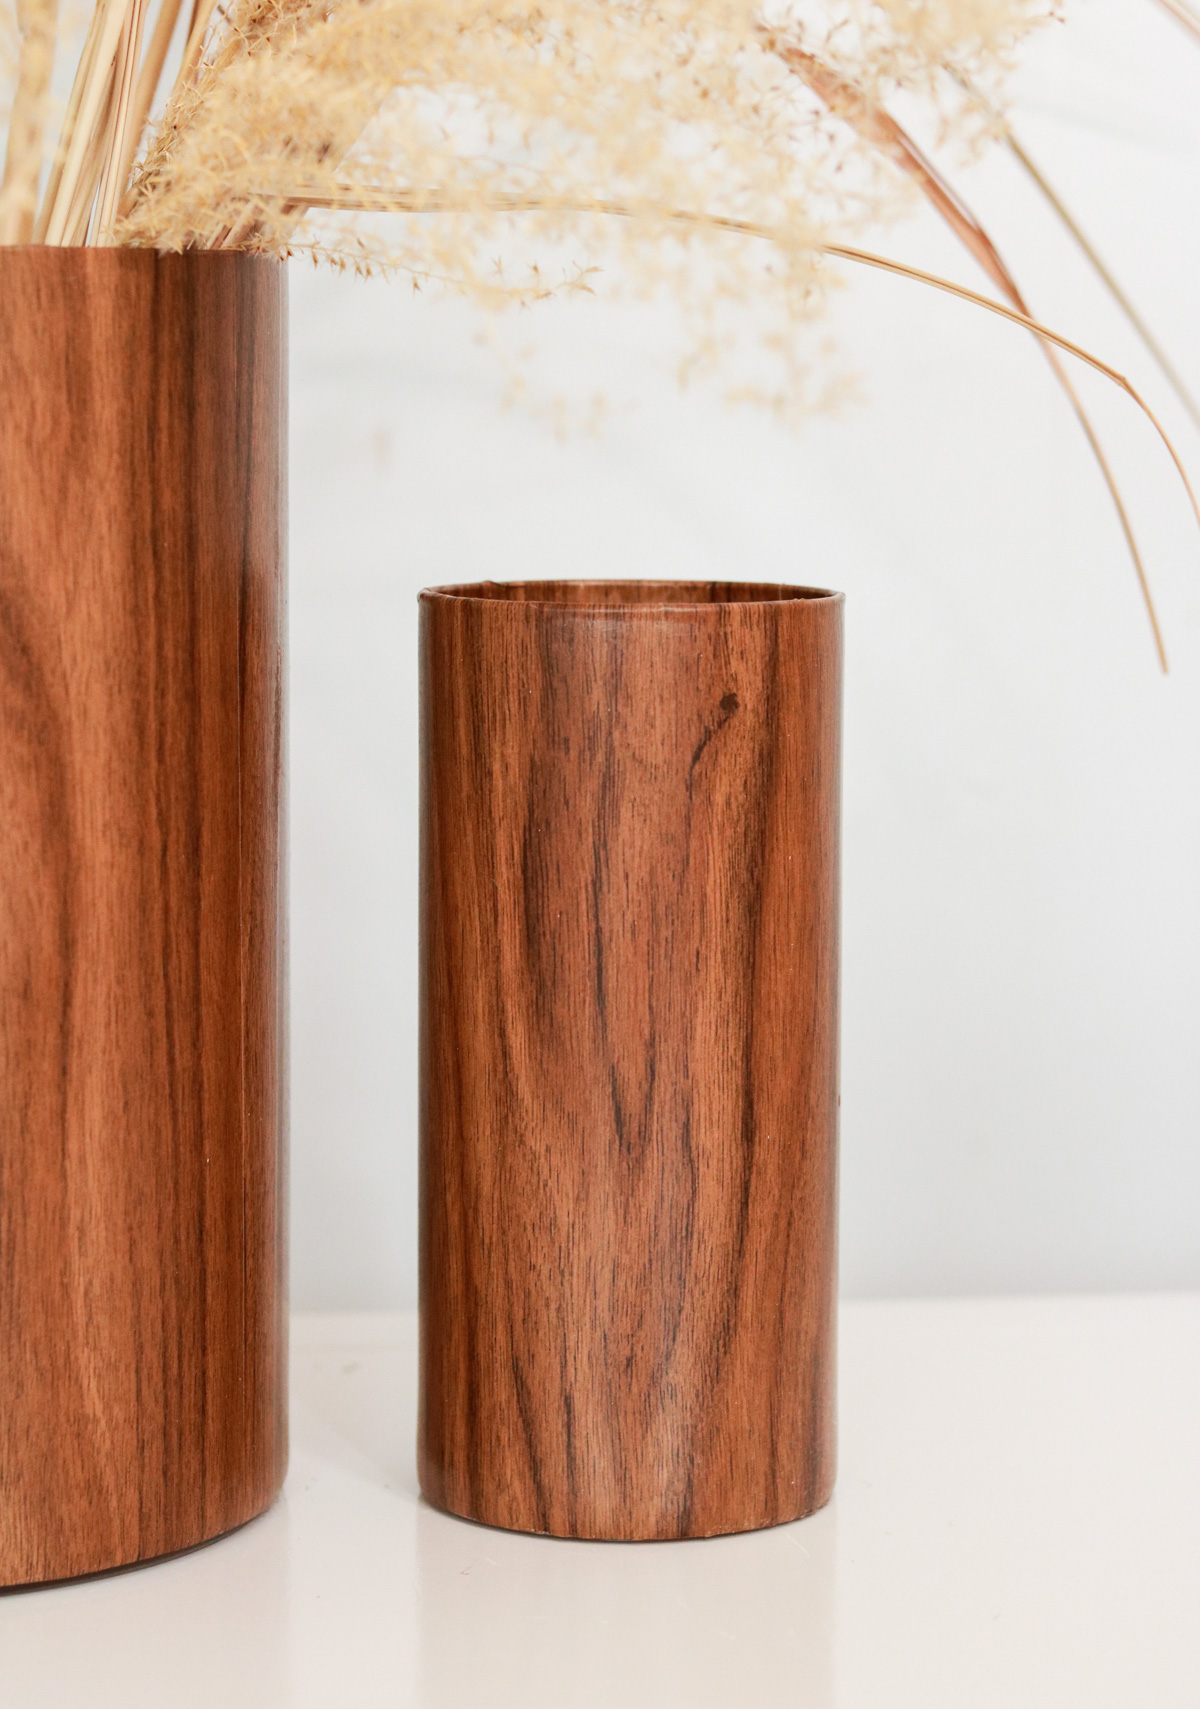 DIY wood vase